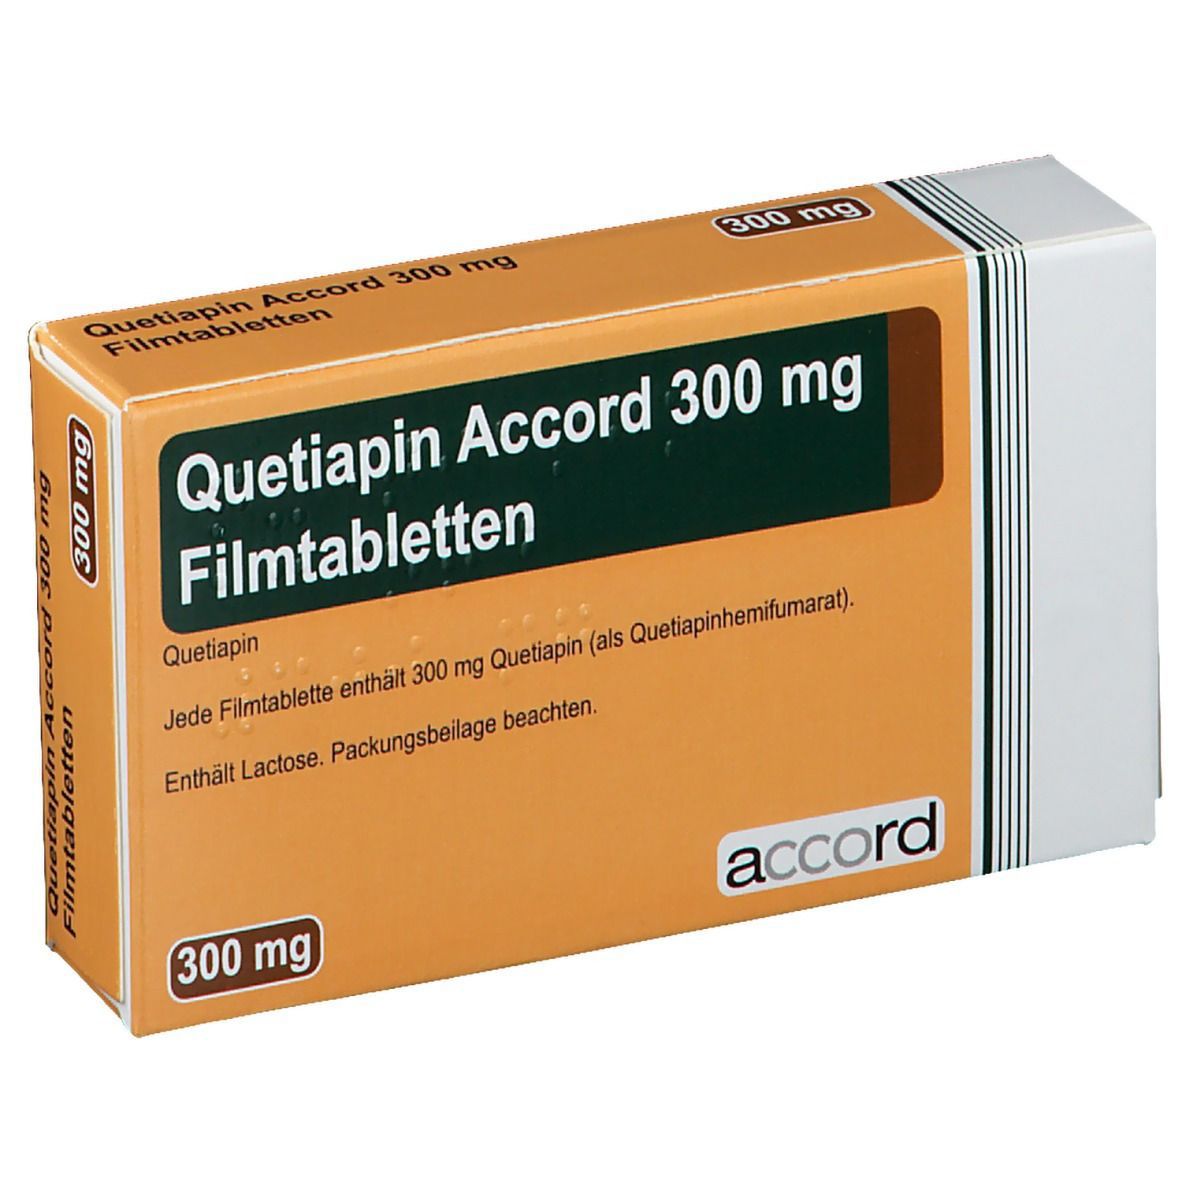 Quetiapin Accord 25 mg